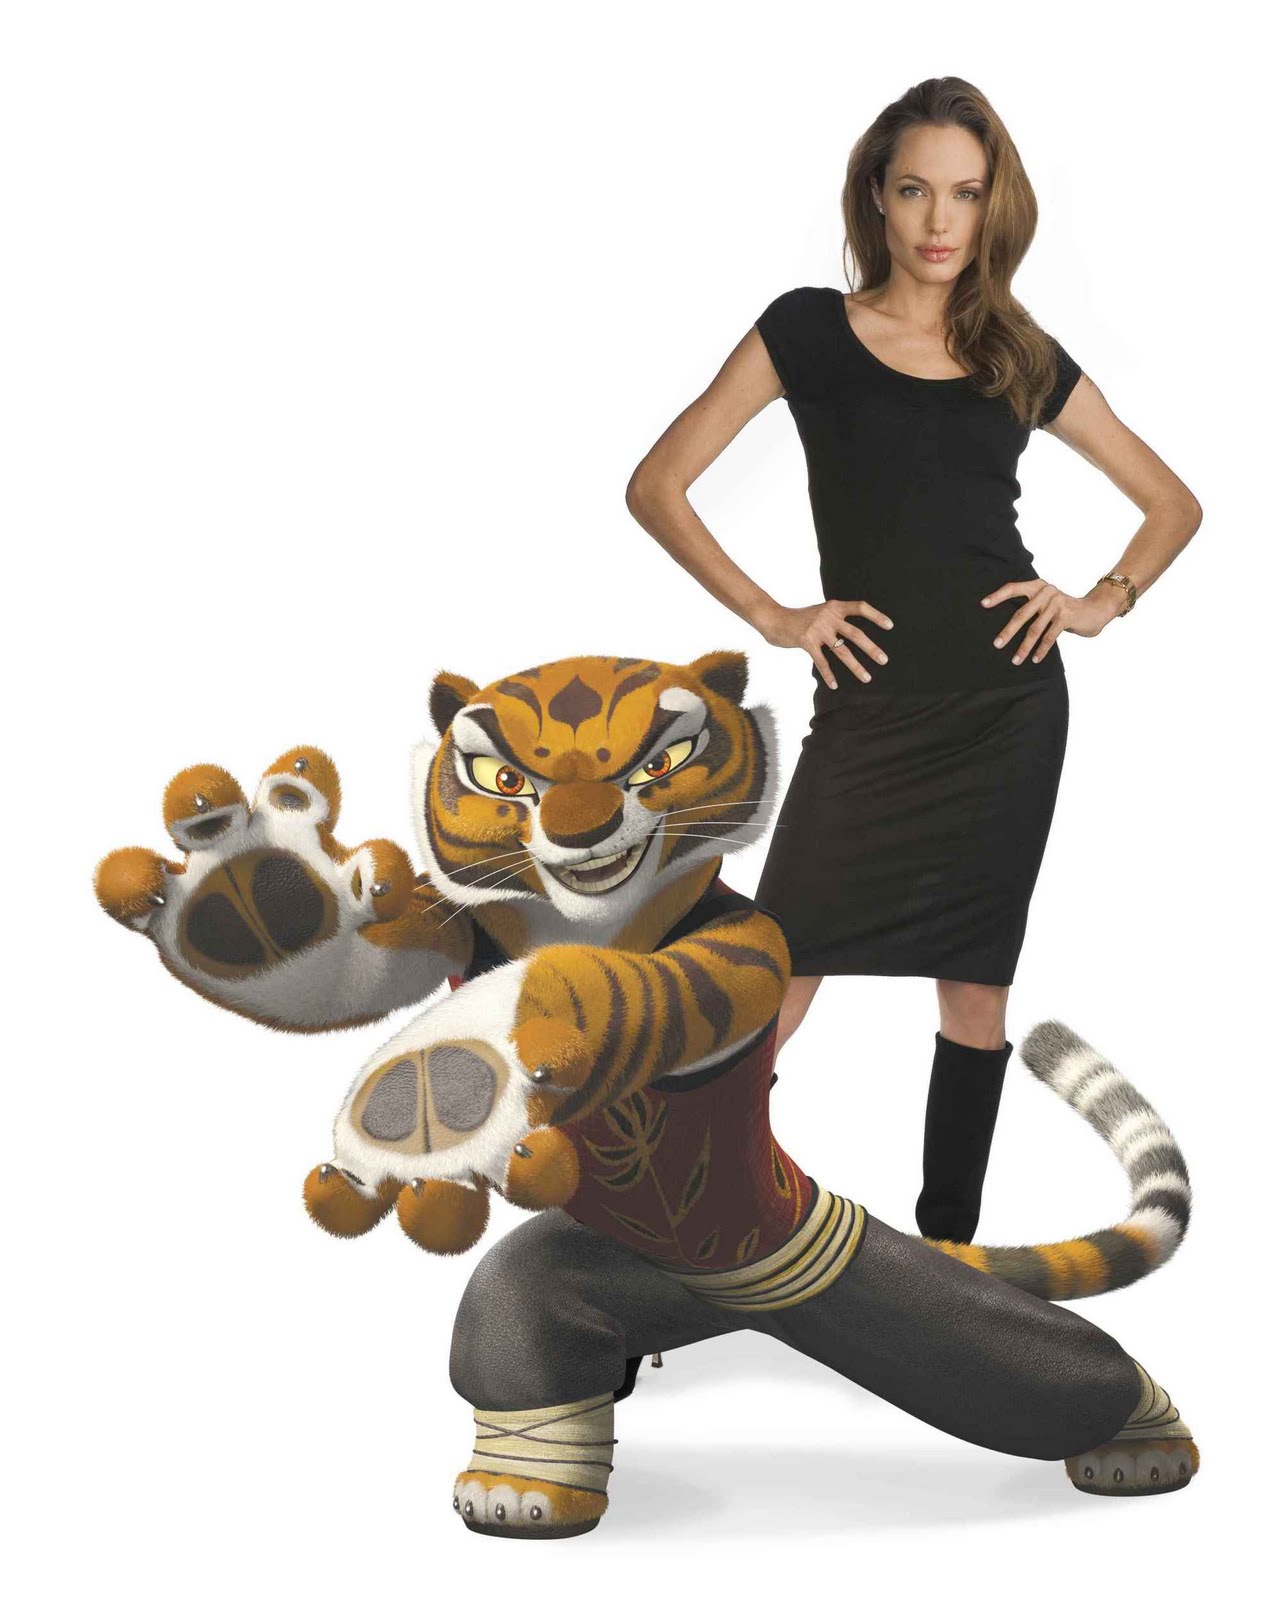 Kung Fu Panda 2 Hot Actress : Tigress (Angelina Jolie) [6 